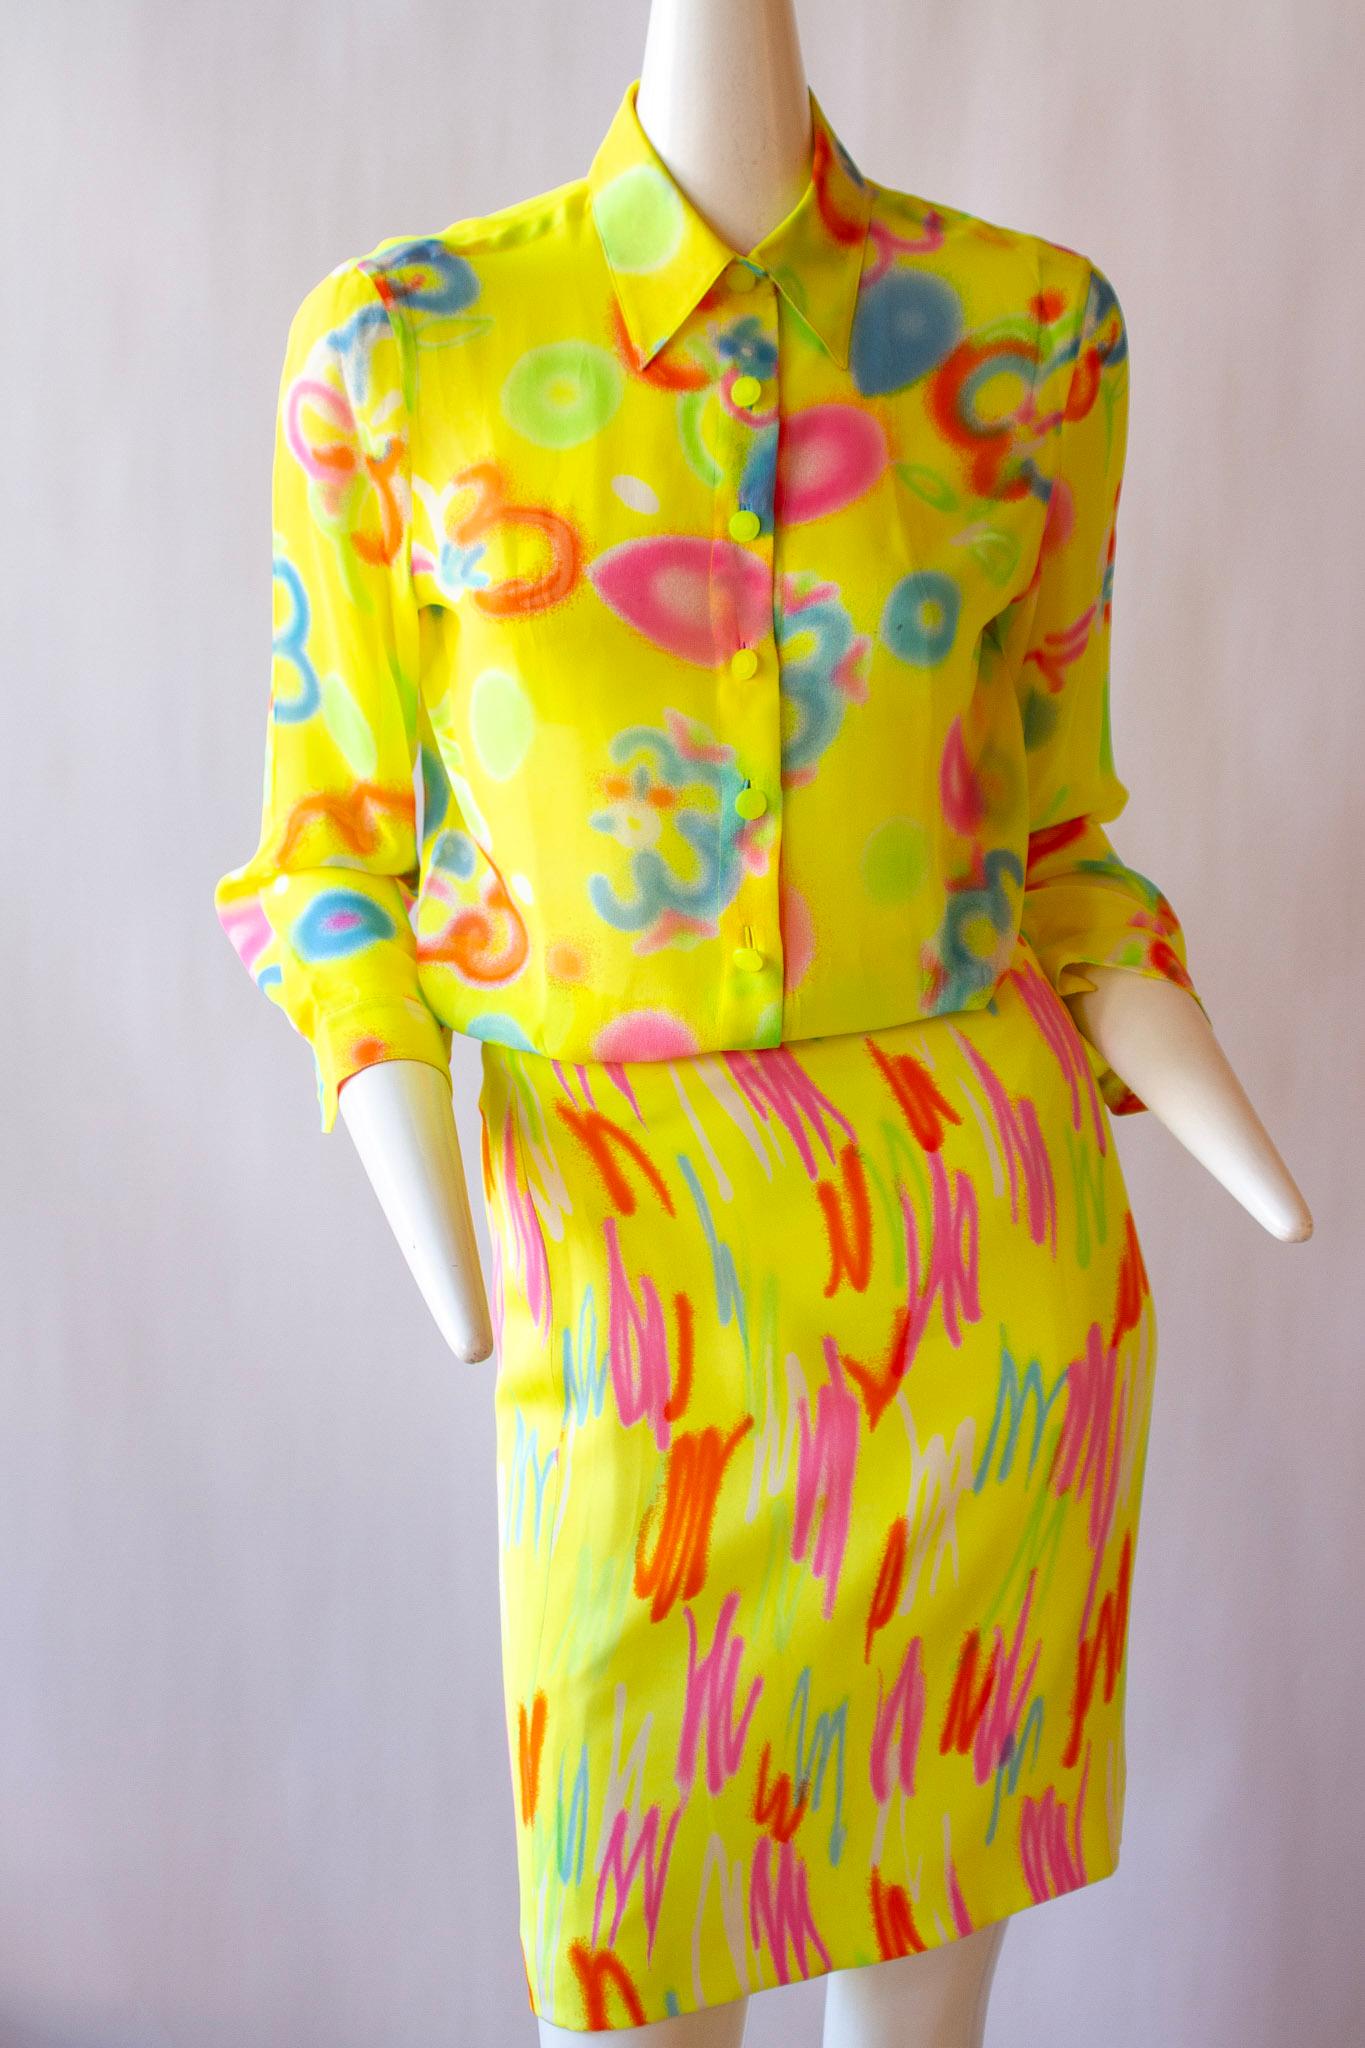 Neonfarbener Rockanzug von Gianni Versace Couture aus der Frühjahrskollektion 1996. Sowohl die Jacke als auch das Kleid sind aus wunderbar weicher Seide gefertigt und zeigen ein auffälliges abstraktes Muster auf gelbem Grund. Das Design weist